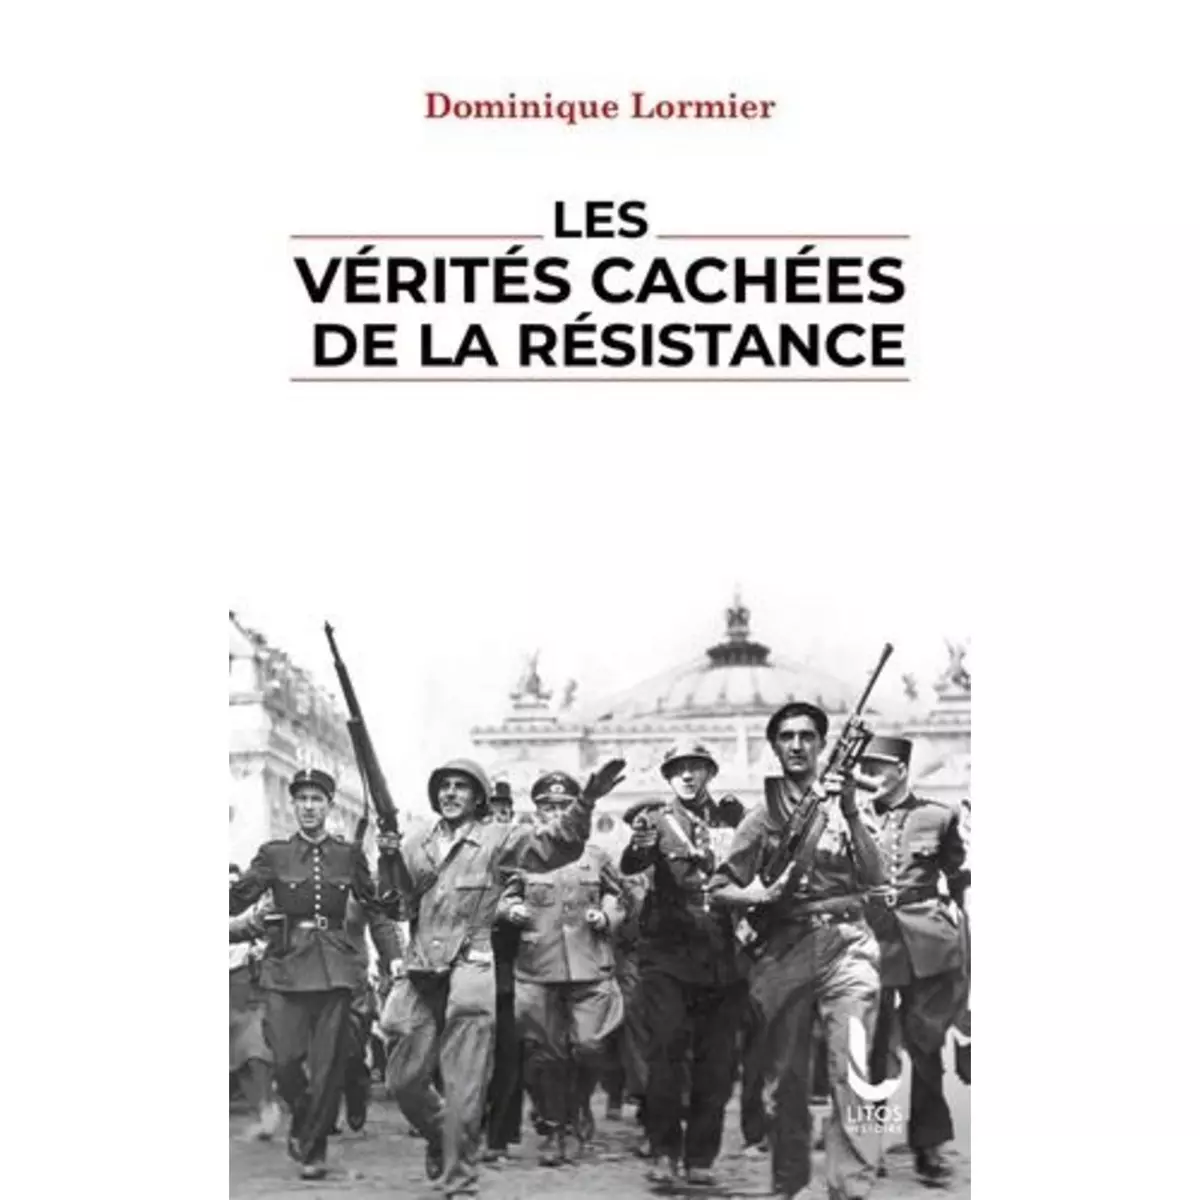  LES VERITES CACHEES DE LA RESISTANCE, Lormier Dominique